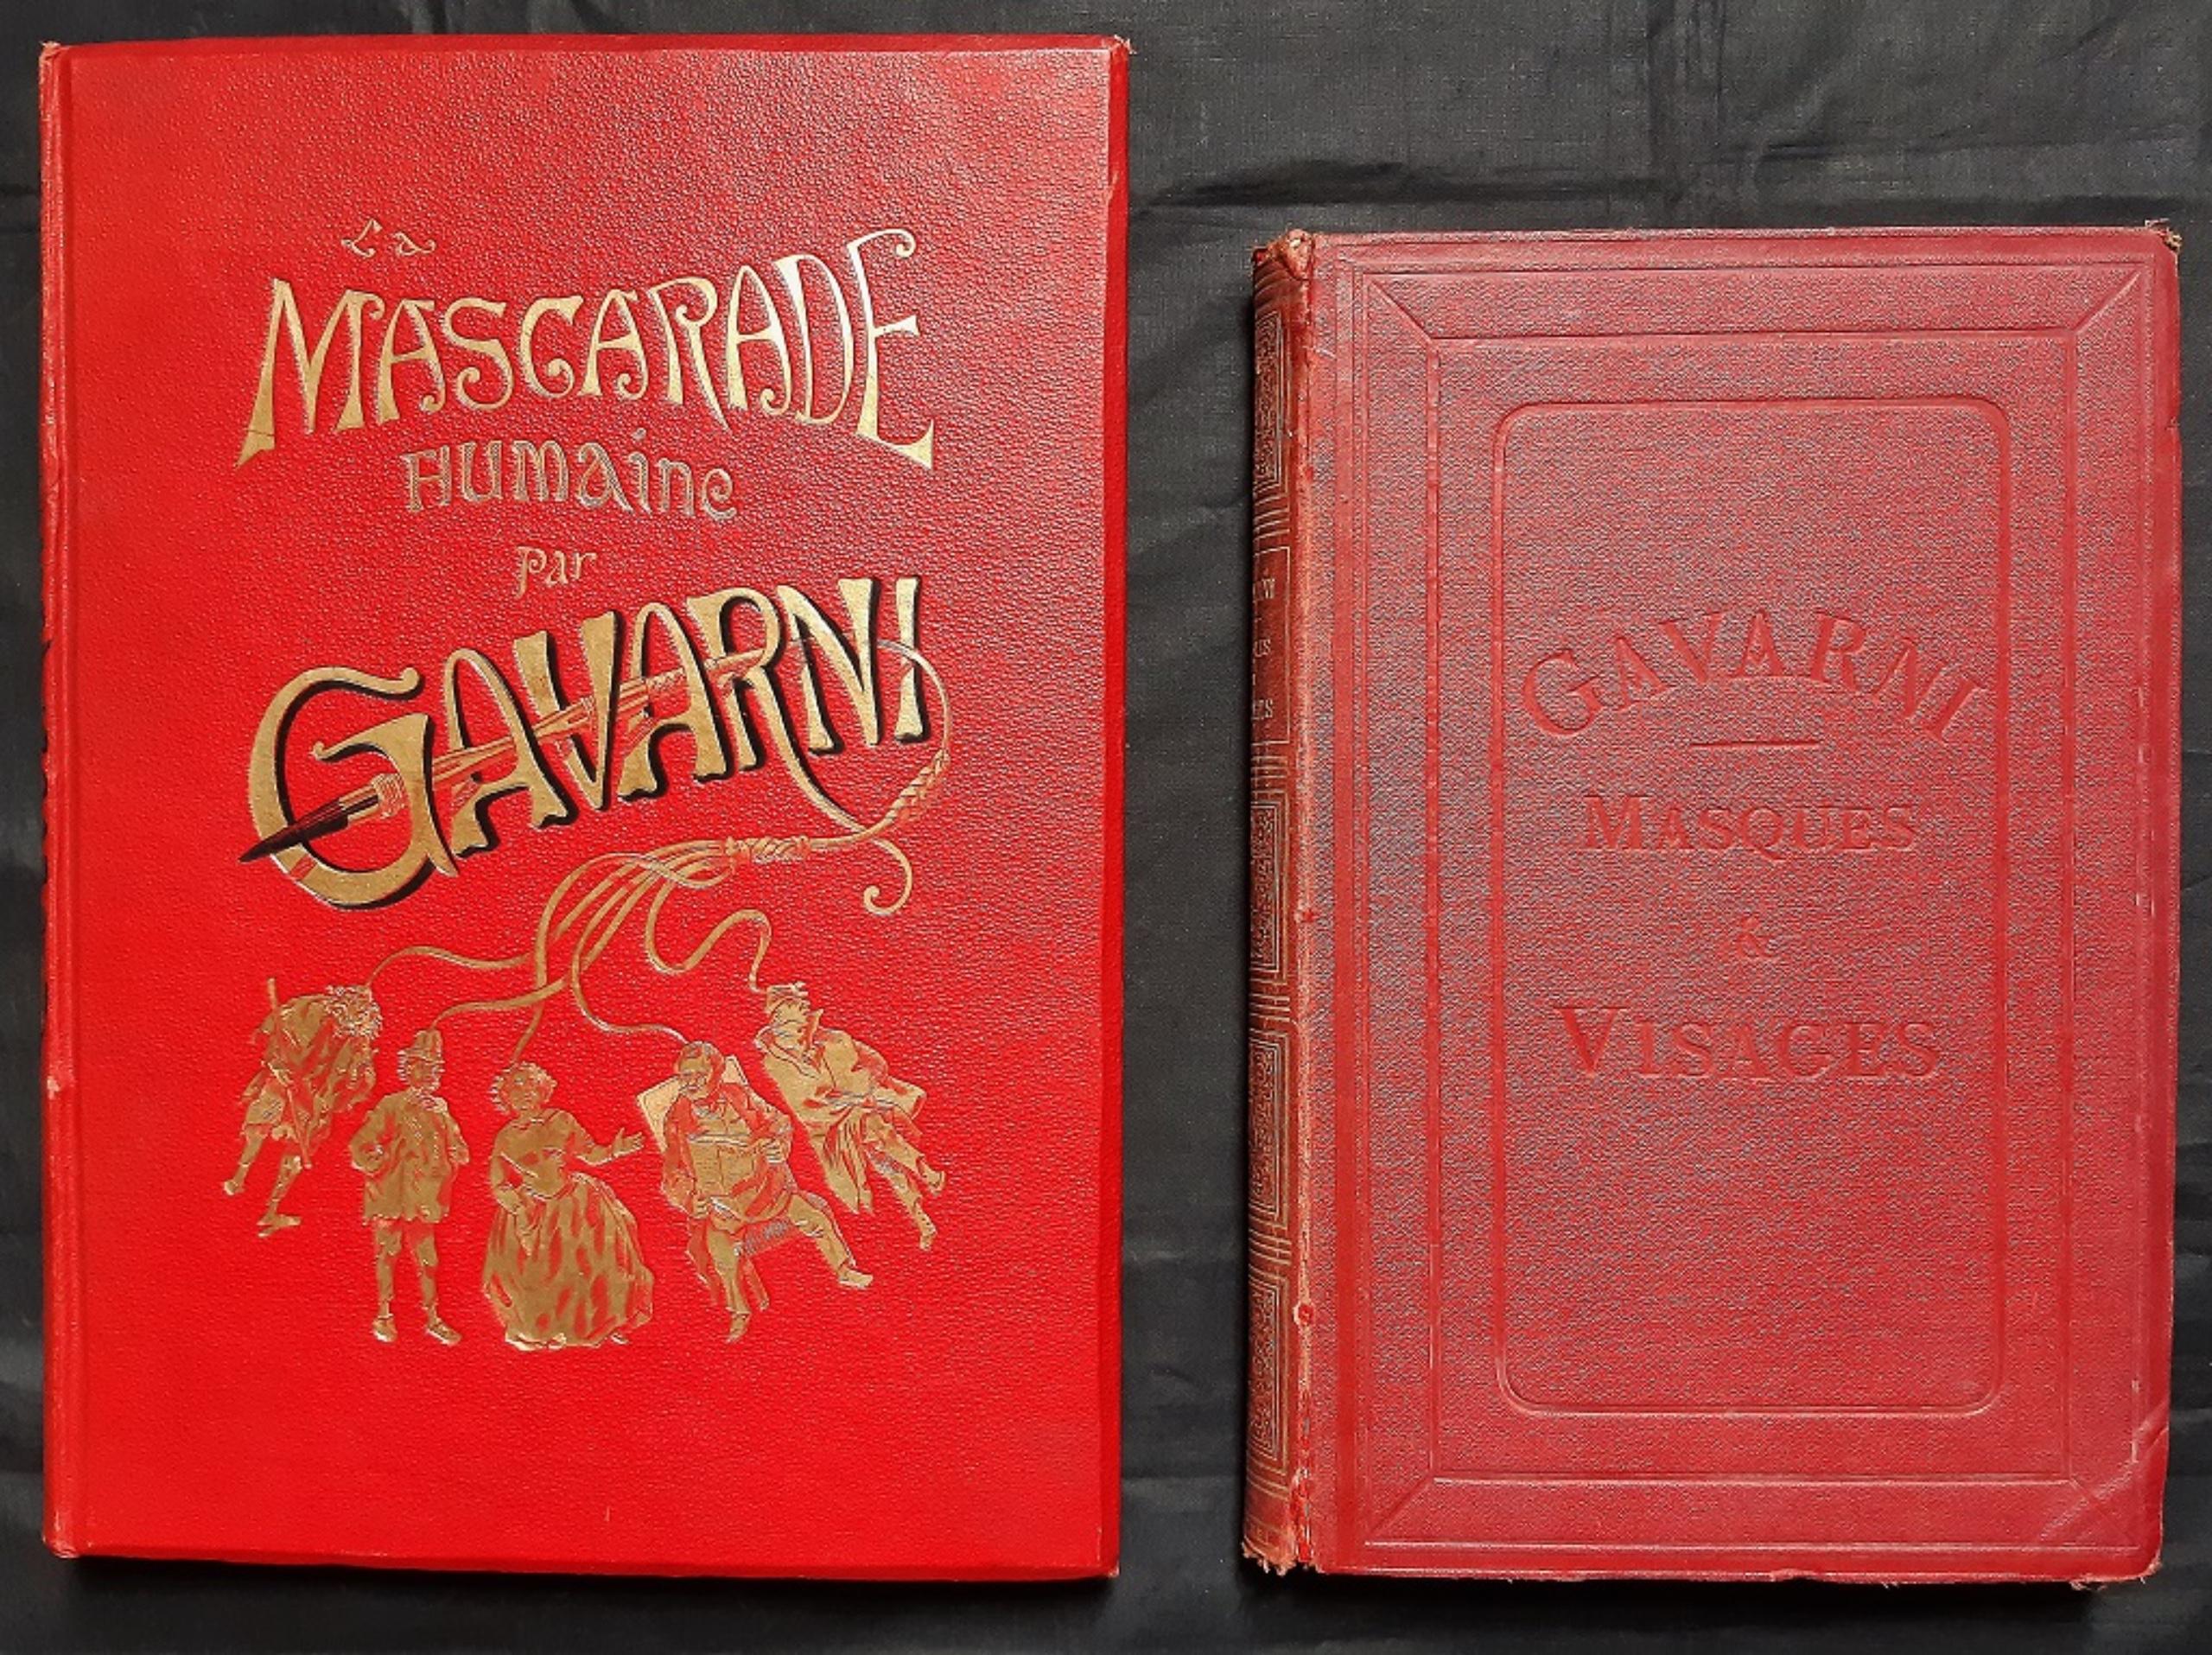 La Mascarade Humaine - Vintage Rare Book Illustrated by Paul Gavarni - 1881 5